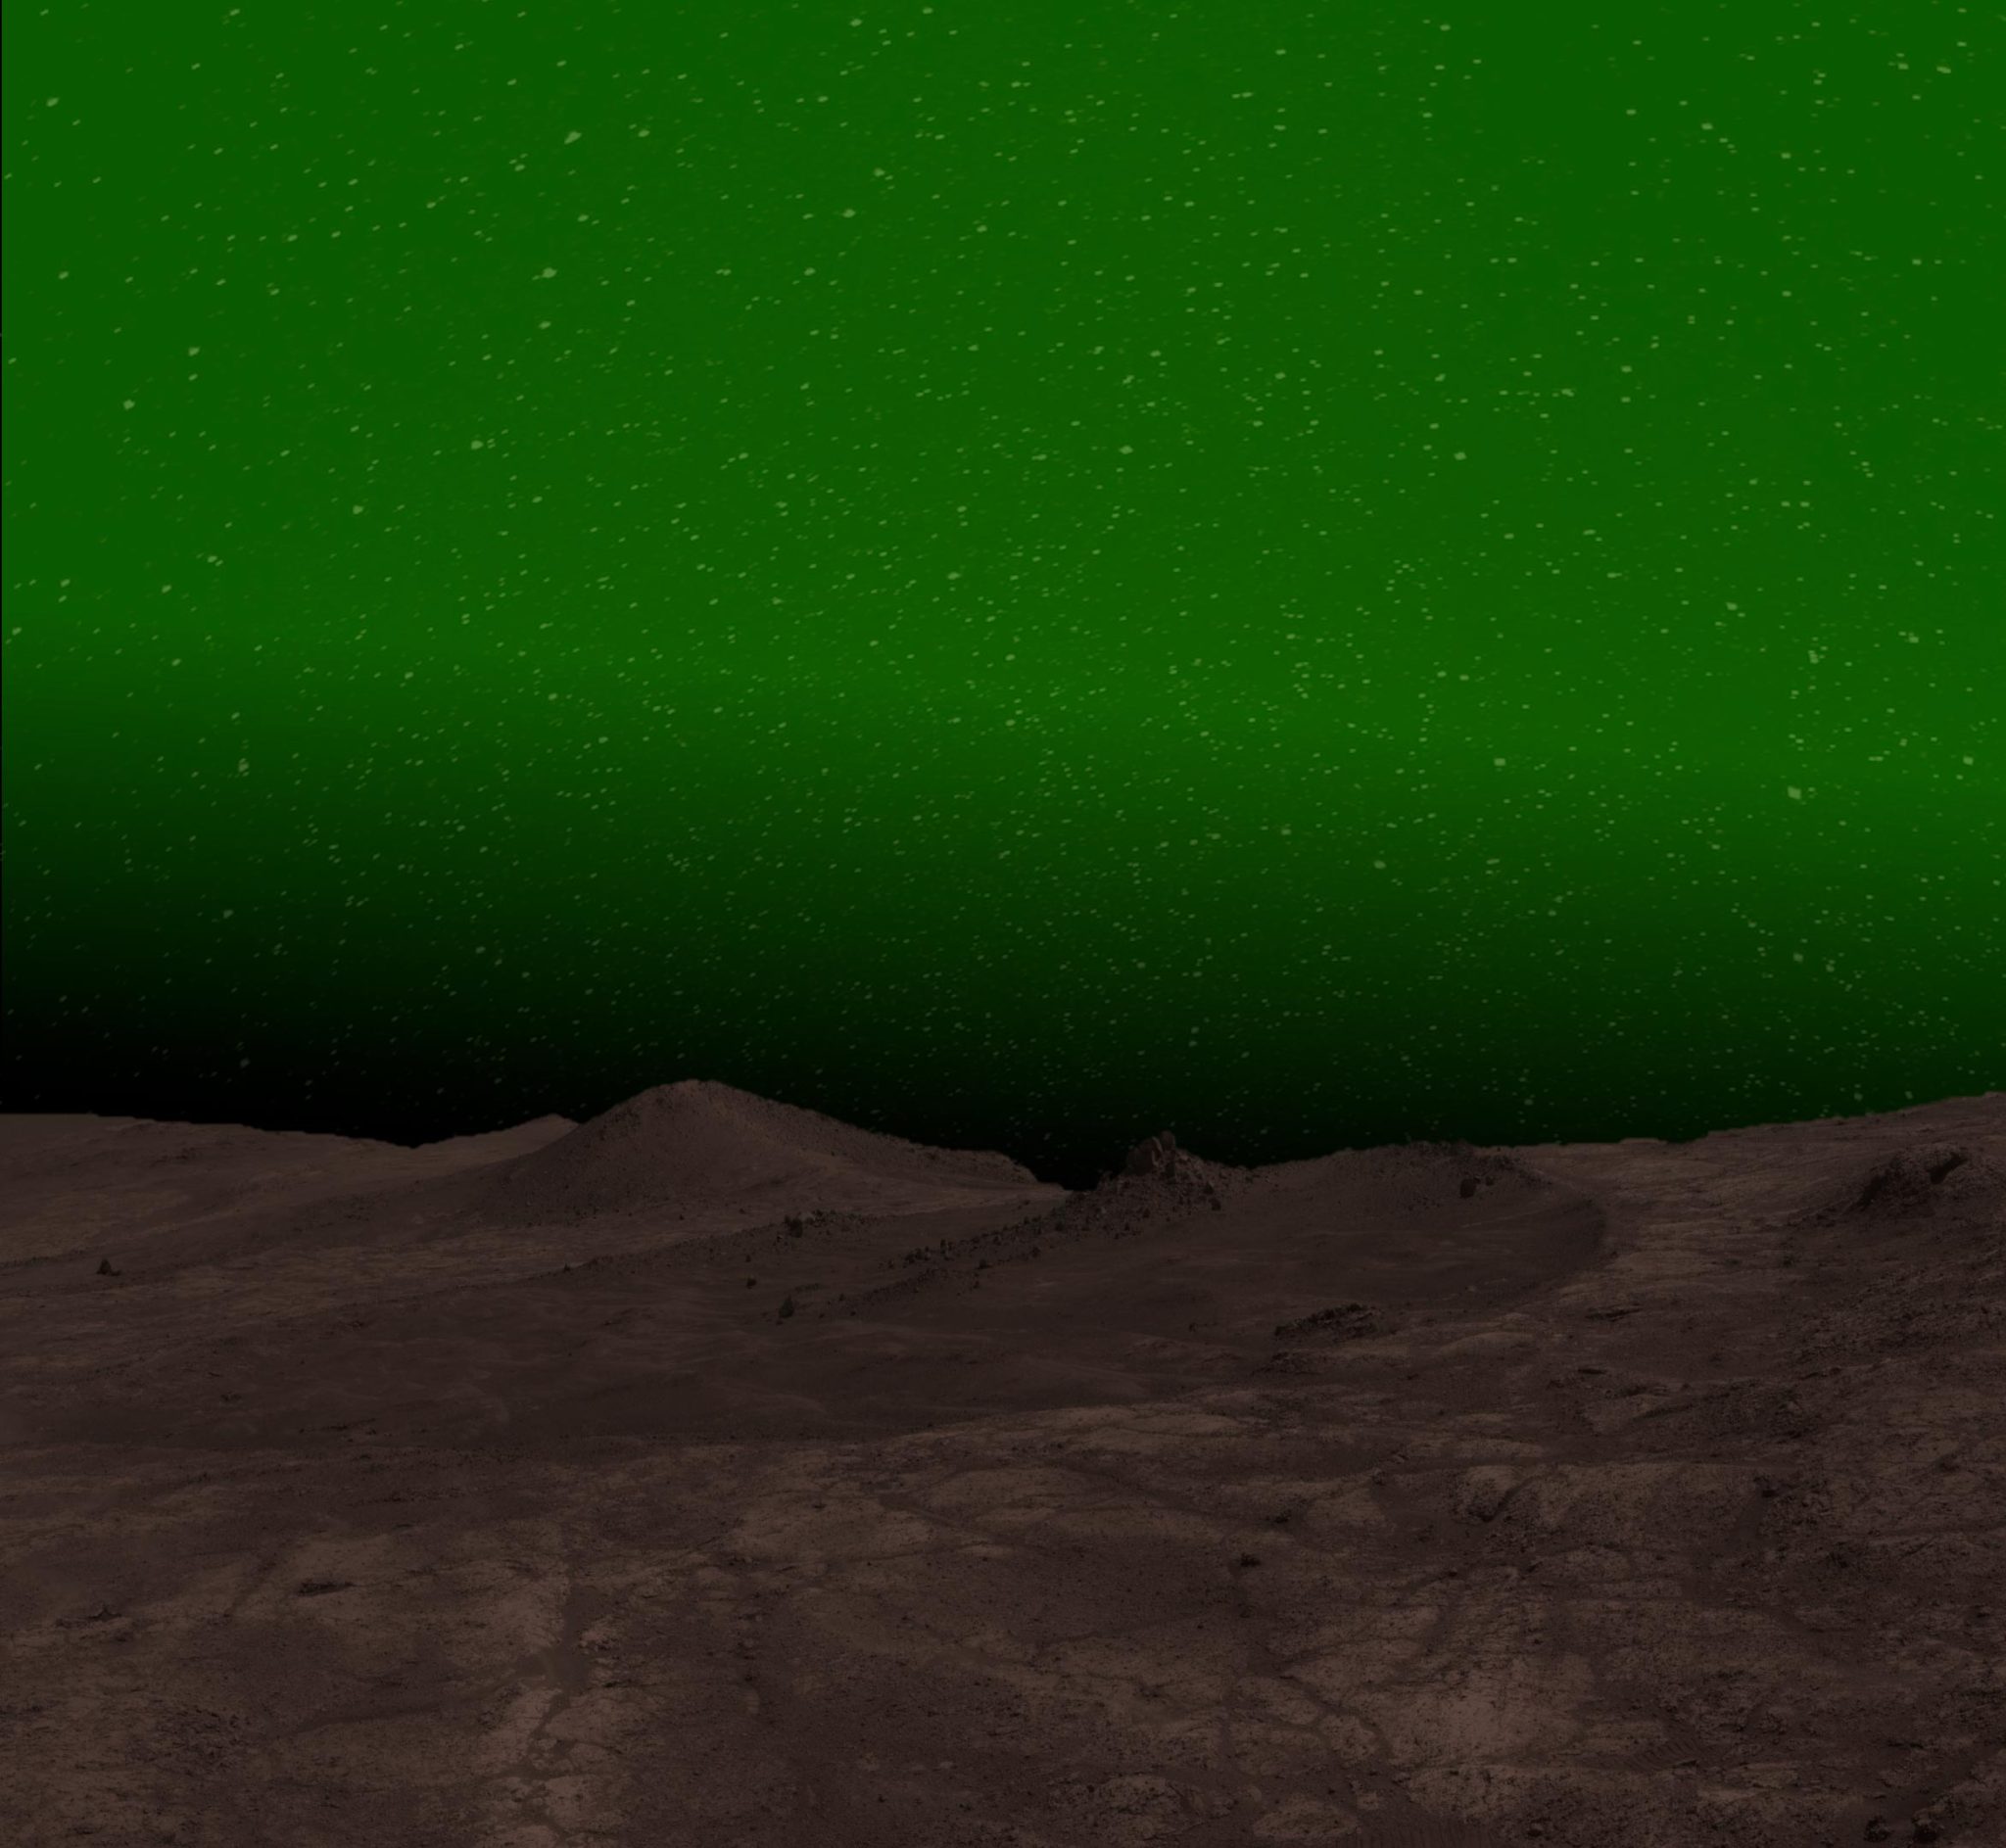 Brilho verde em uma noite marciana